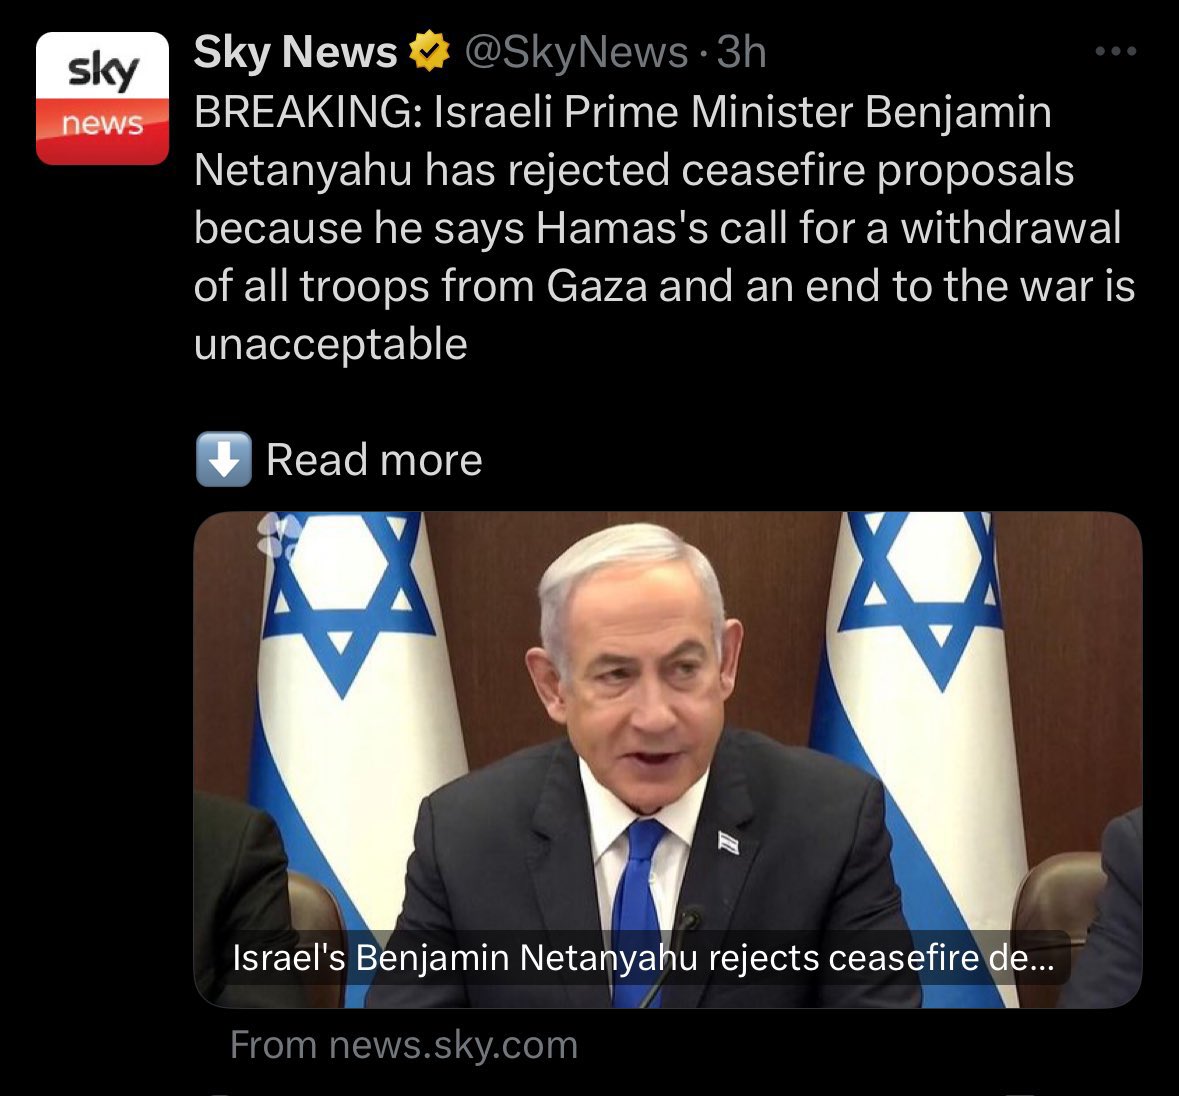 La prova definitiva che a Israele degli ostaggi non è MAI fregato un cazzo e che Hamas è sempre e solo stata una scusa perfetta per prendersi Gaza e cacciar via i palestinesi.

Rimangono solo gli imbecilli a negarlo e nascondersi dietro l'antisemitismo.